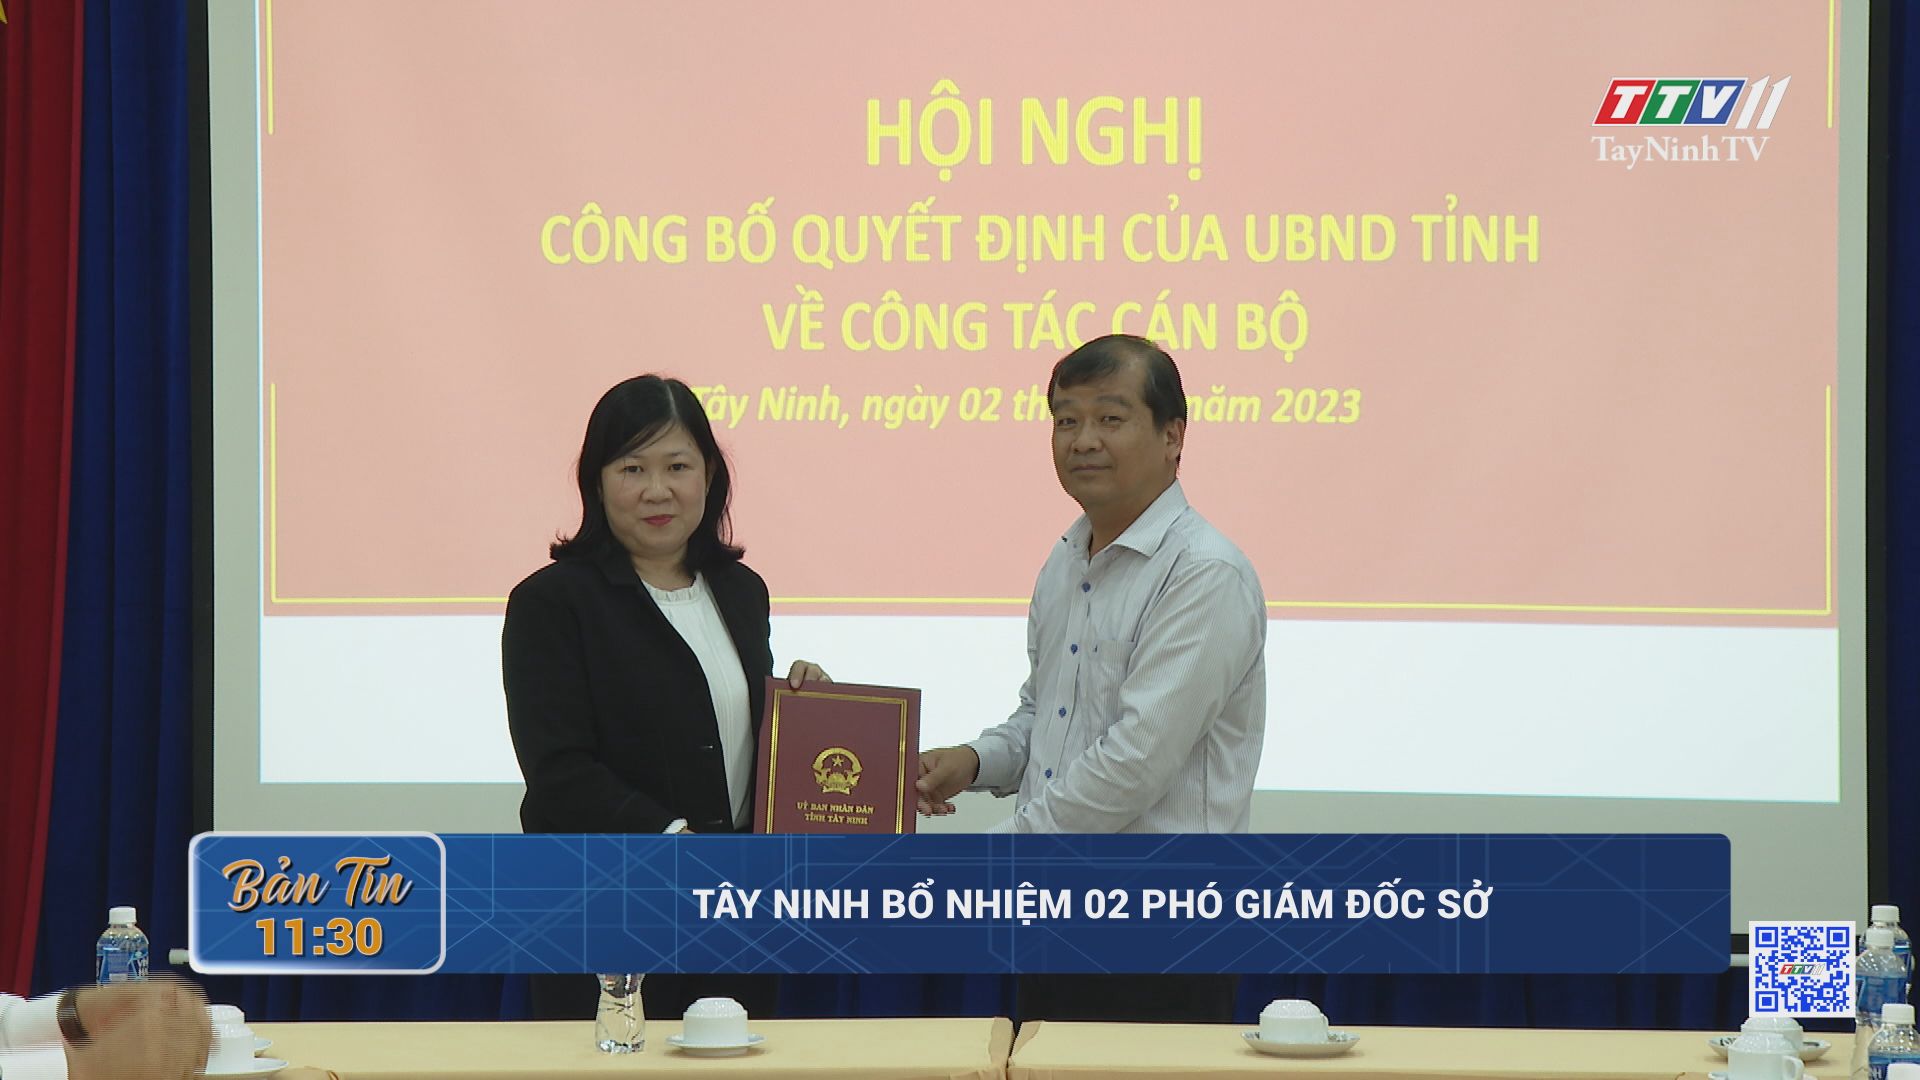 Tây Ninh bổ nhiệm 02 Phó Giám đốc Sở | TayNinhTV